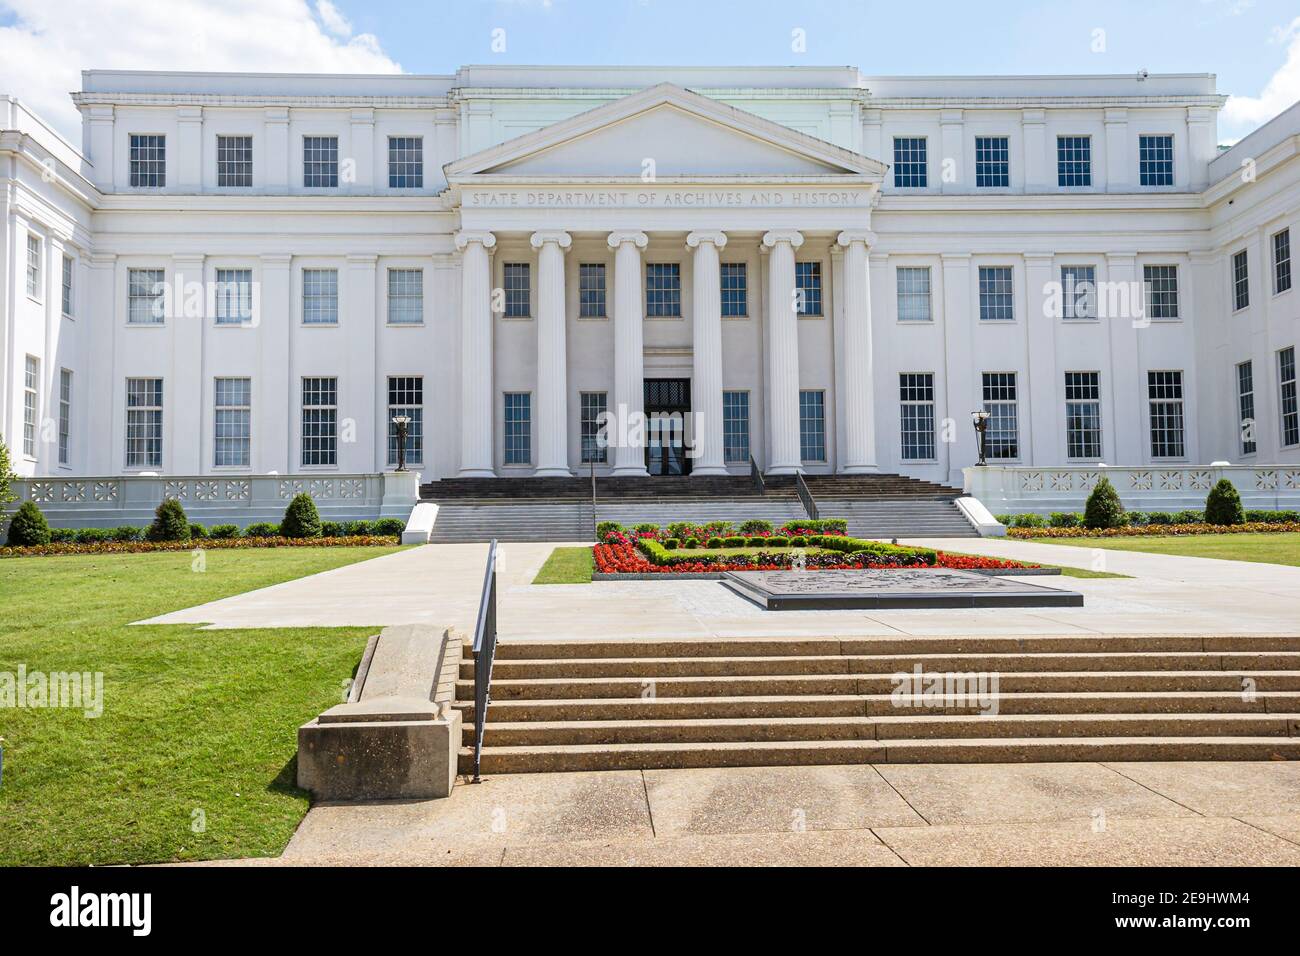 Alabama Montgomery State Department of Archives & History, Regierungsdokumente Gebäude vor dem äußeren Vordereingang, Stockfoto